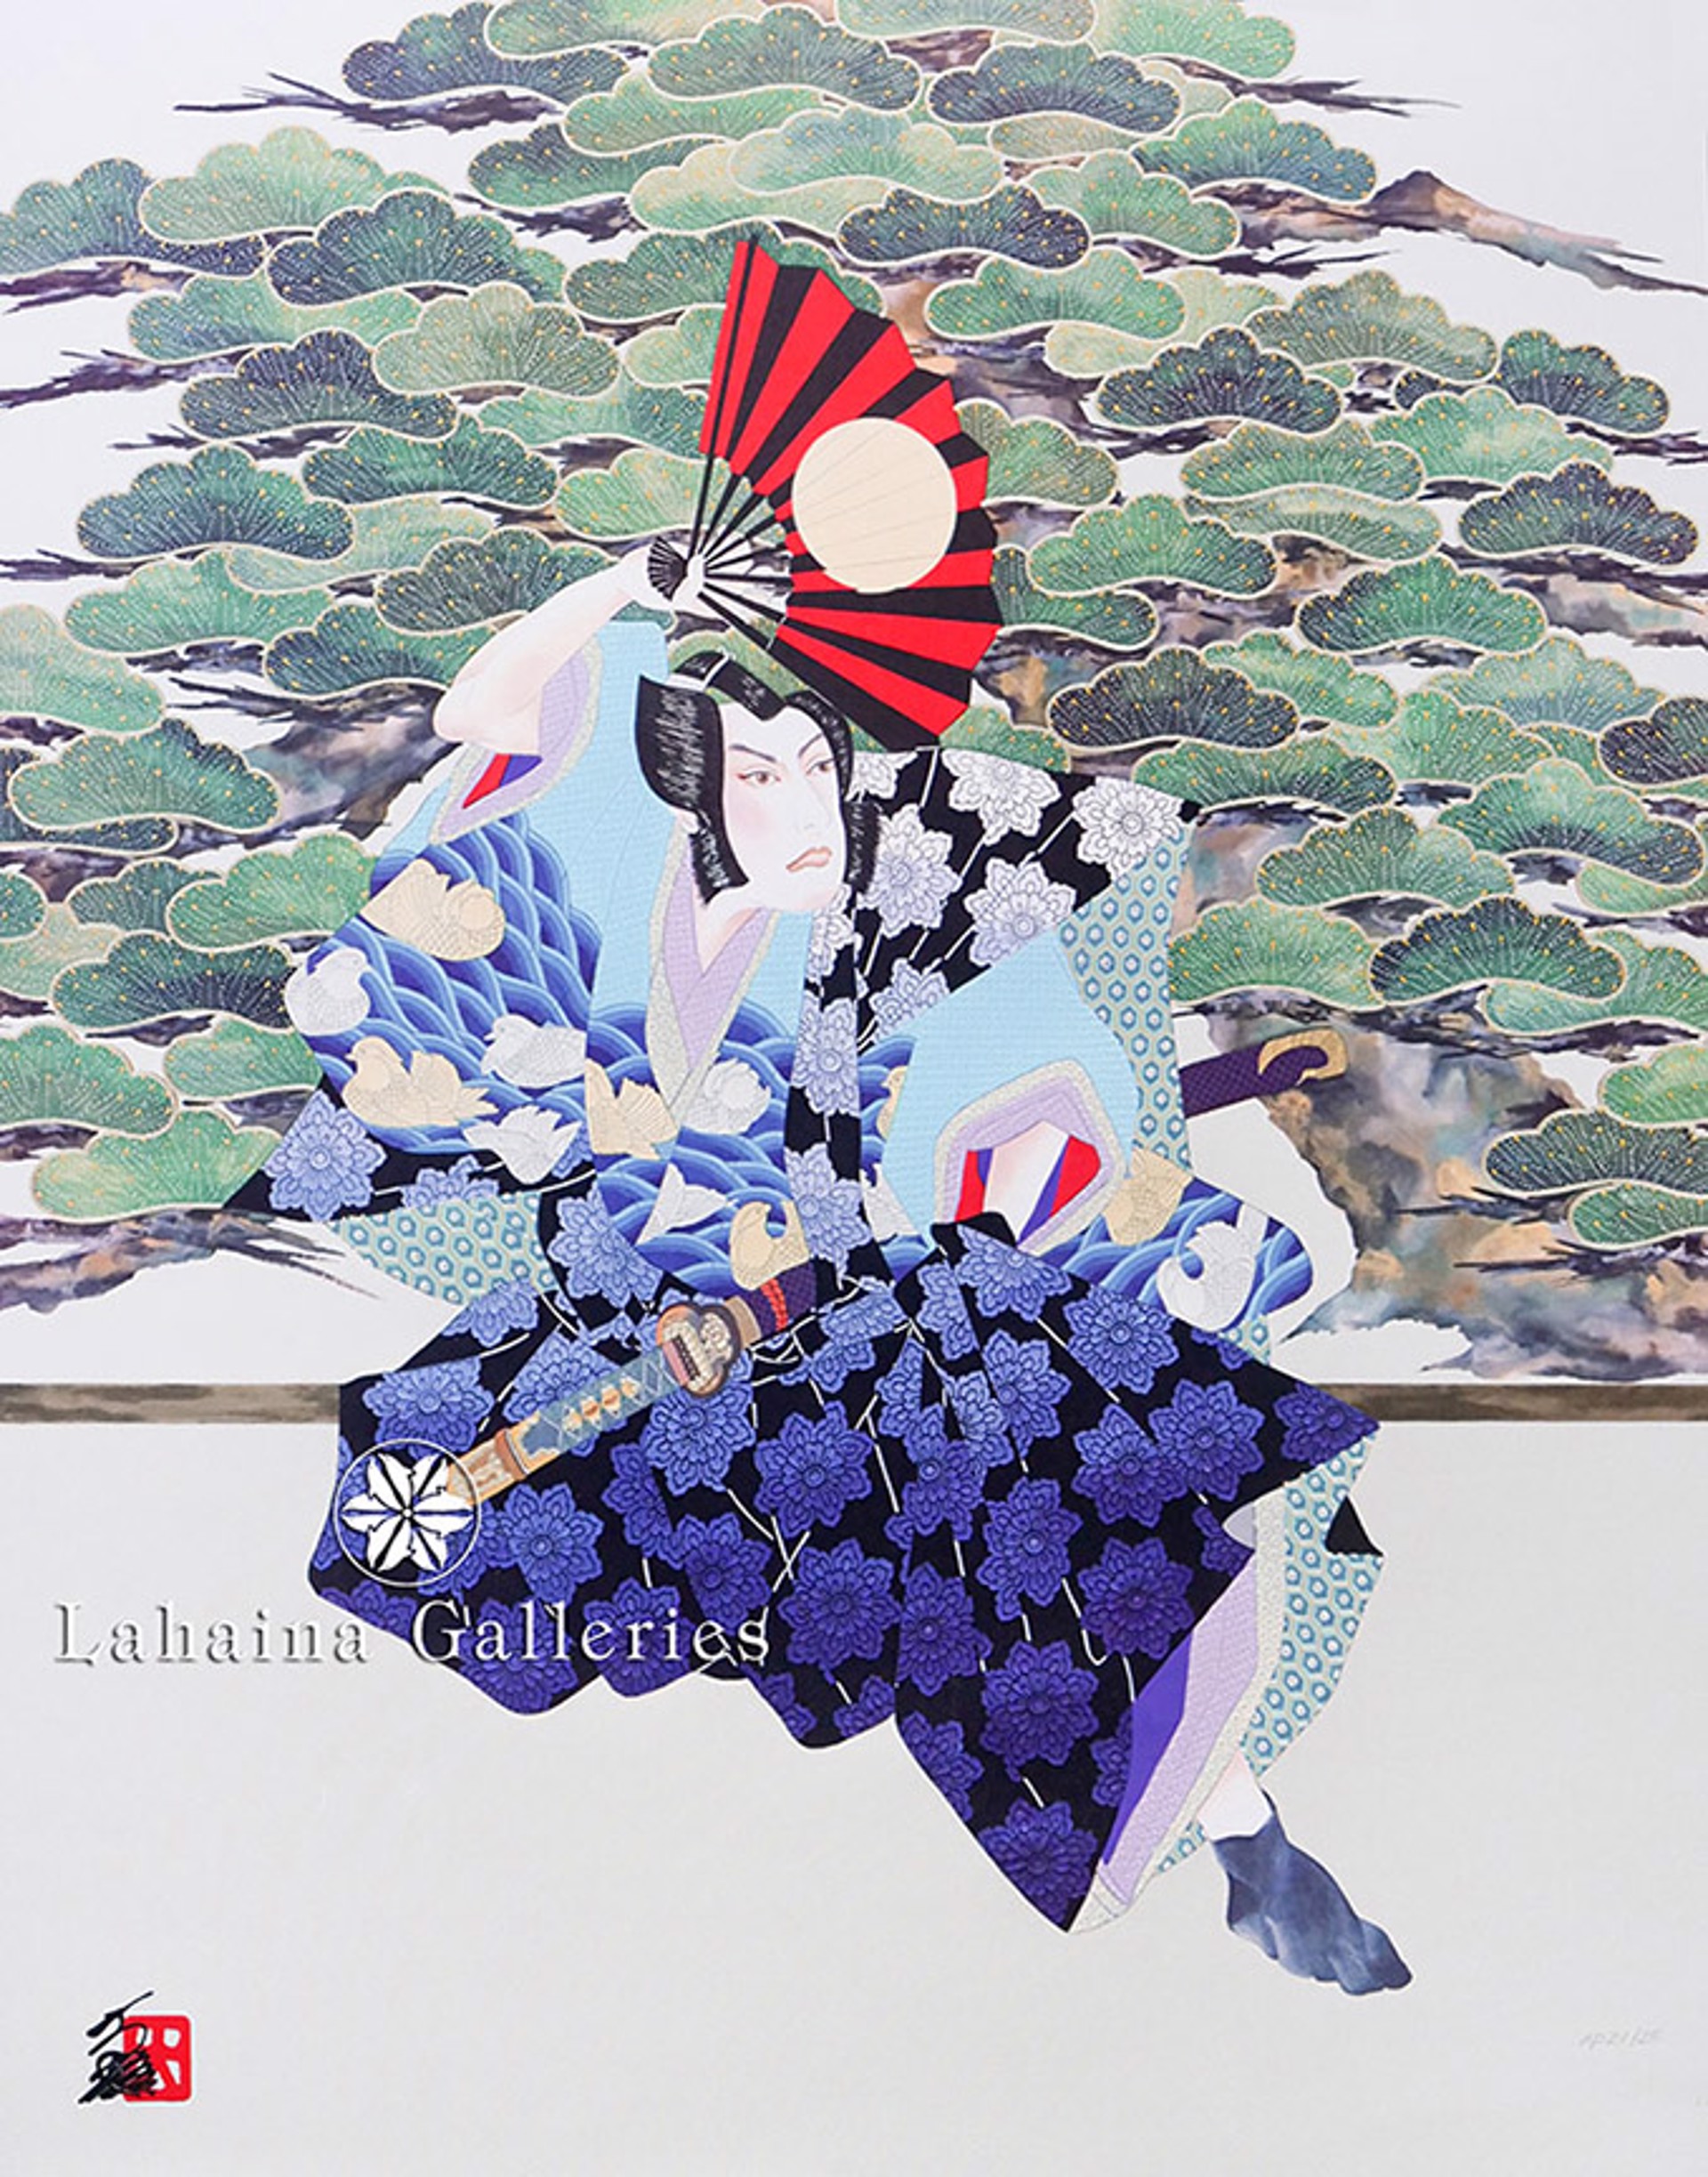 Lord Asano by Hisashi Otsuka